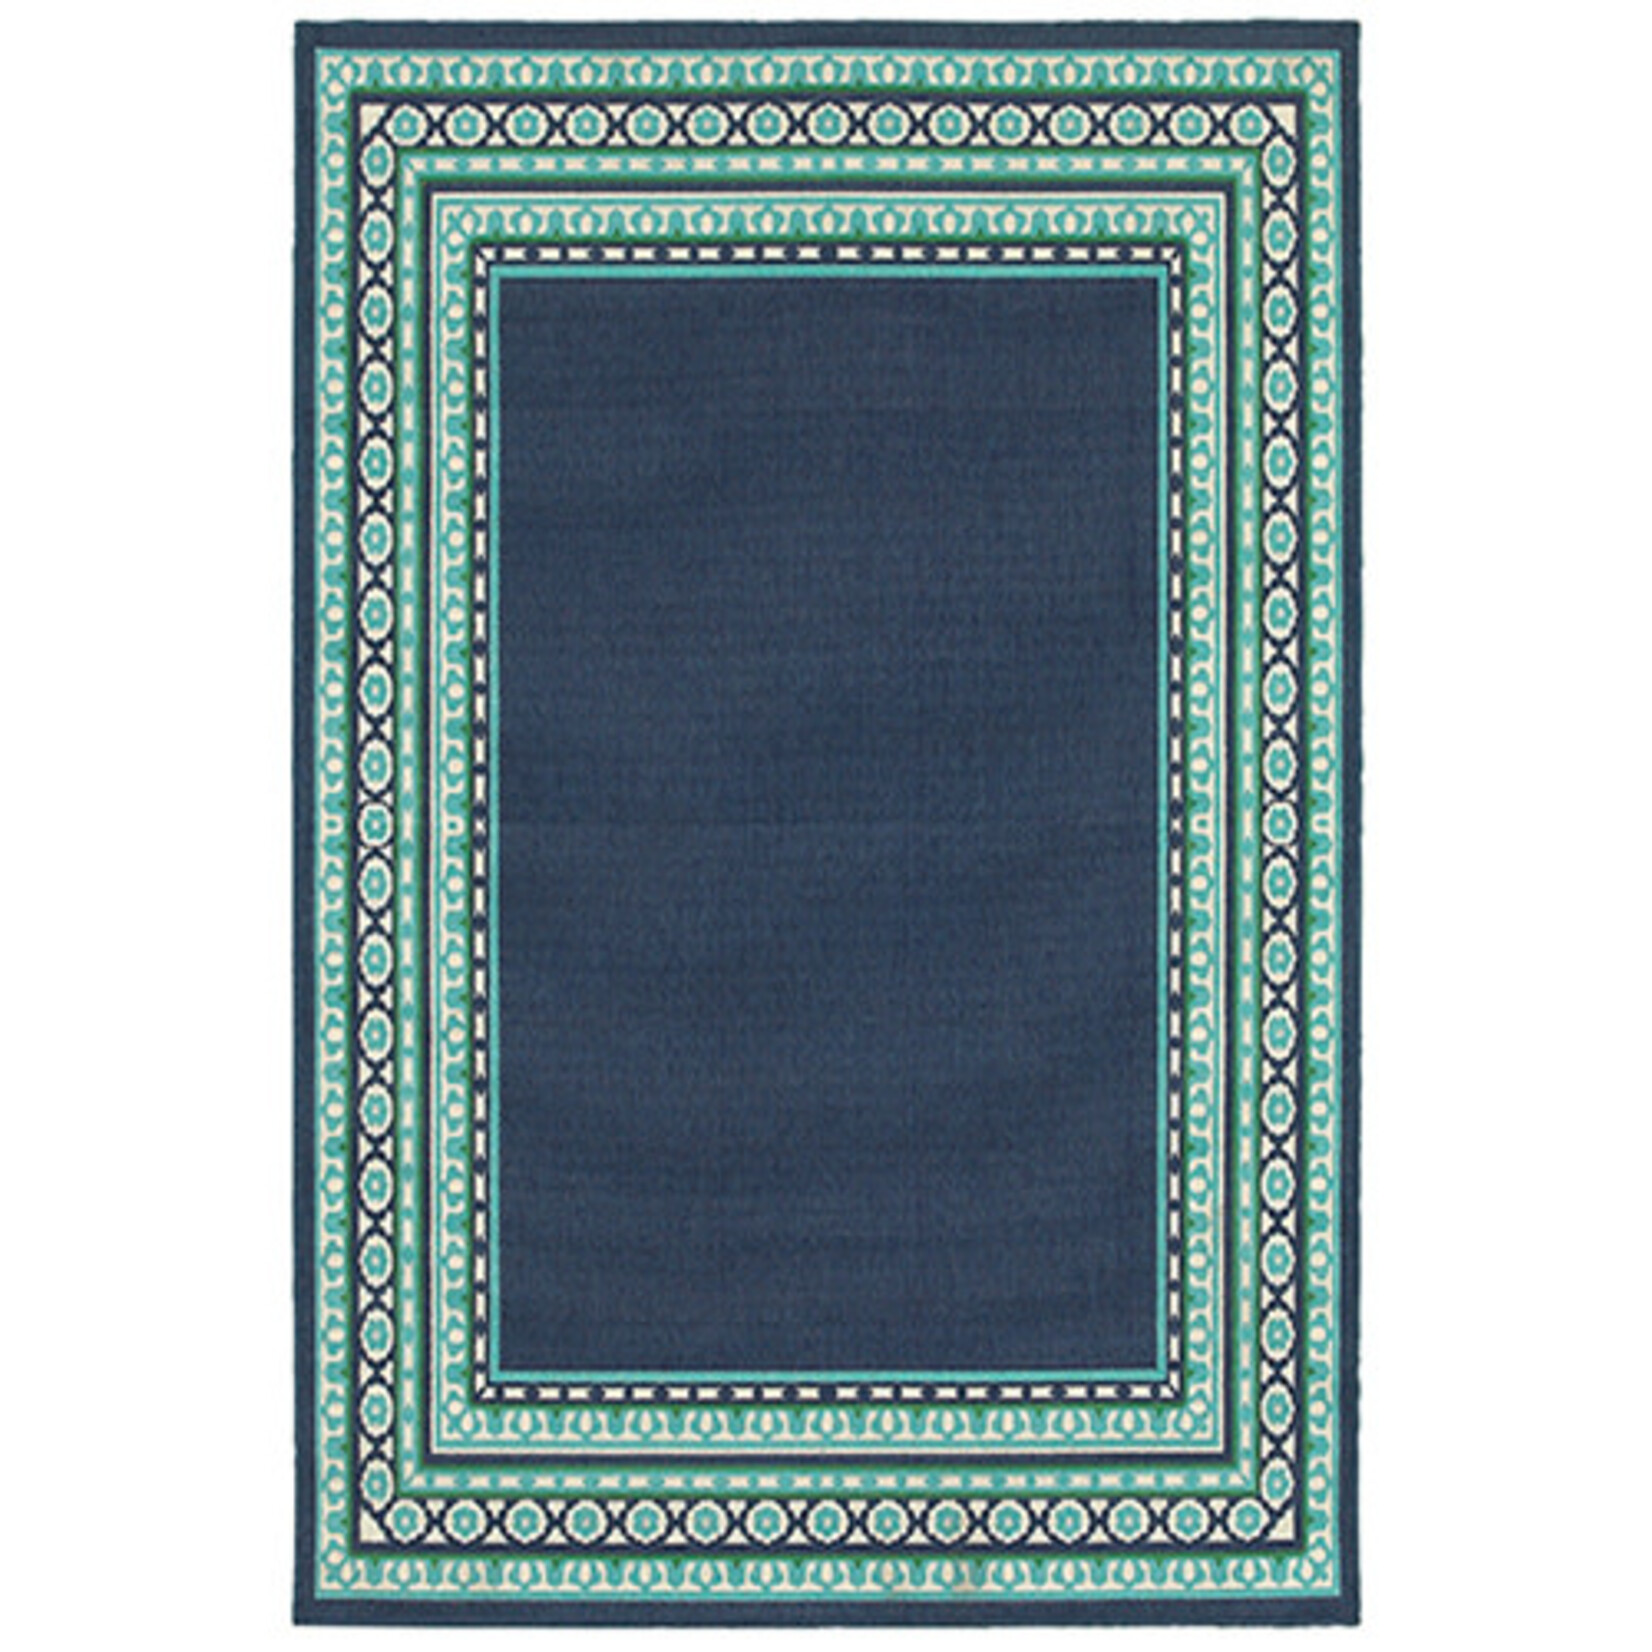 Oriental Weavers Meridian 9650B 7.10"x10.10" Rug